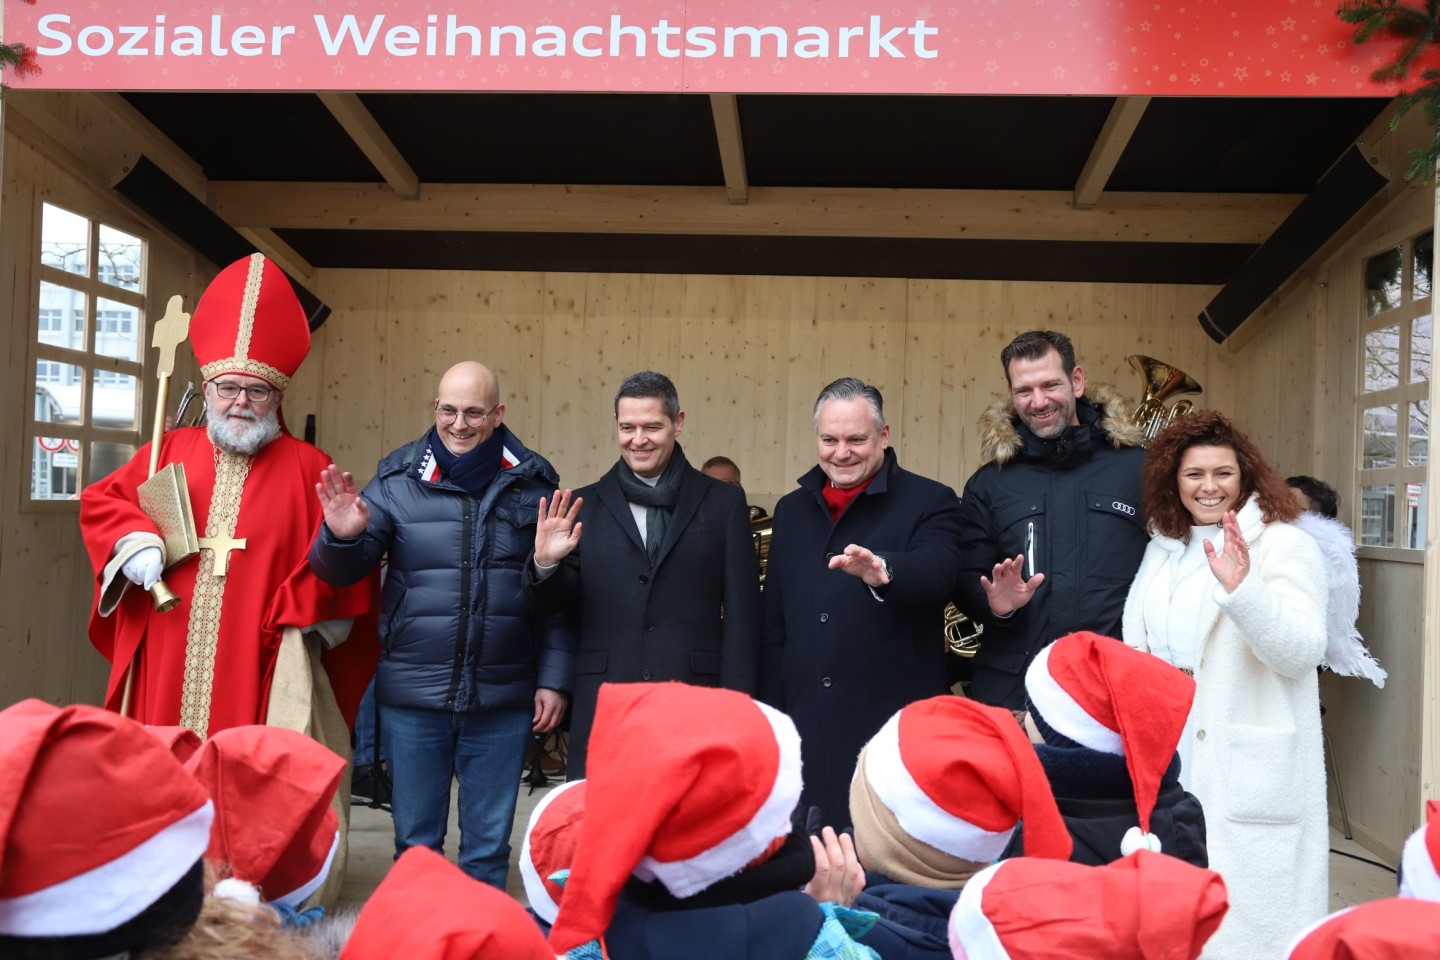 Weihnachtsmarkt, Weihnachten, Sozialer Markt, Audi, Ingolstadt, Bayern, Guter Zweck